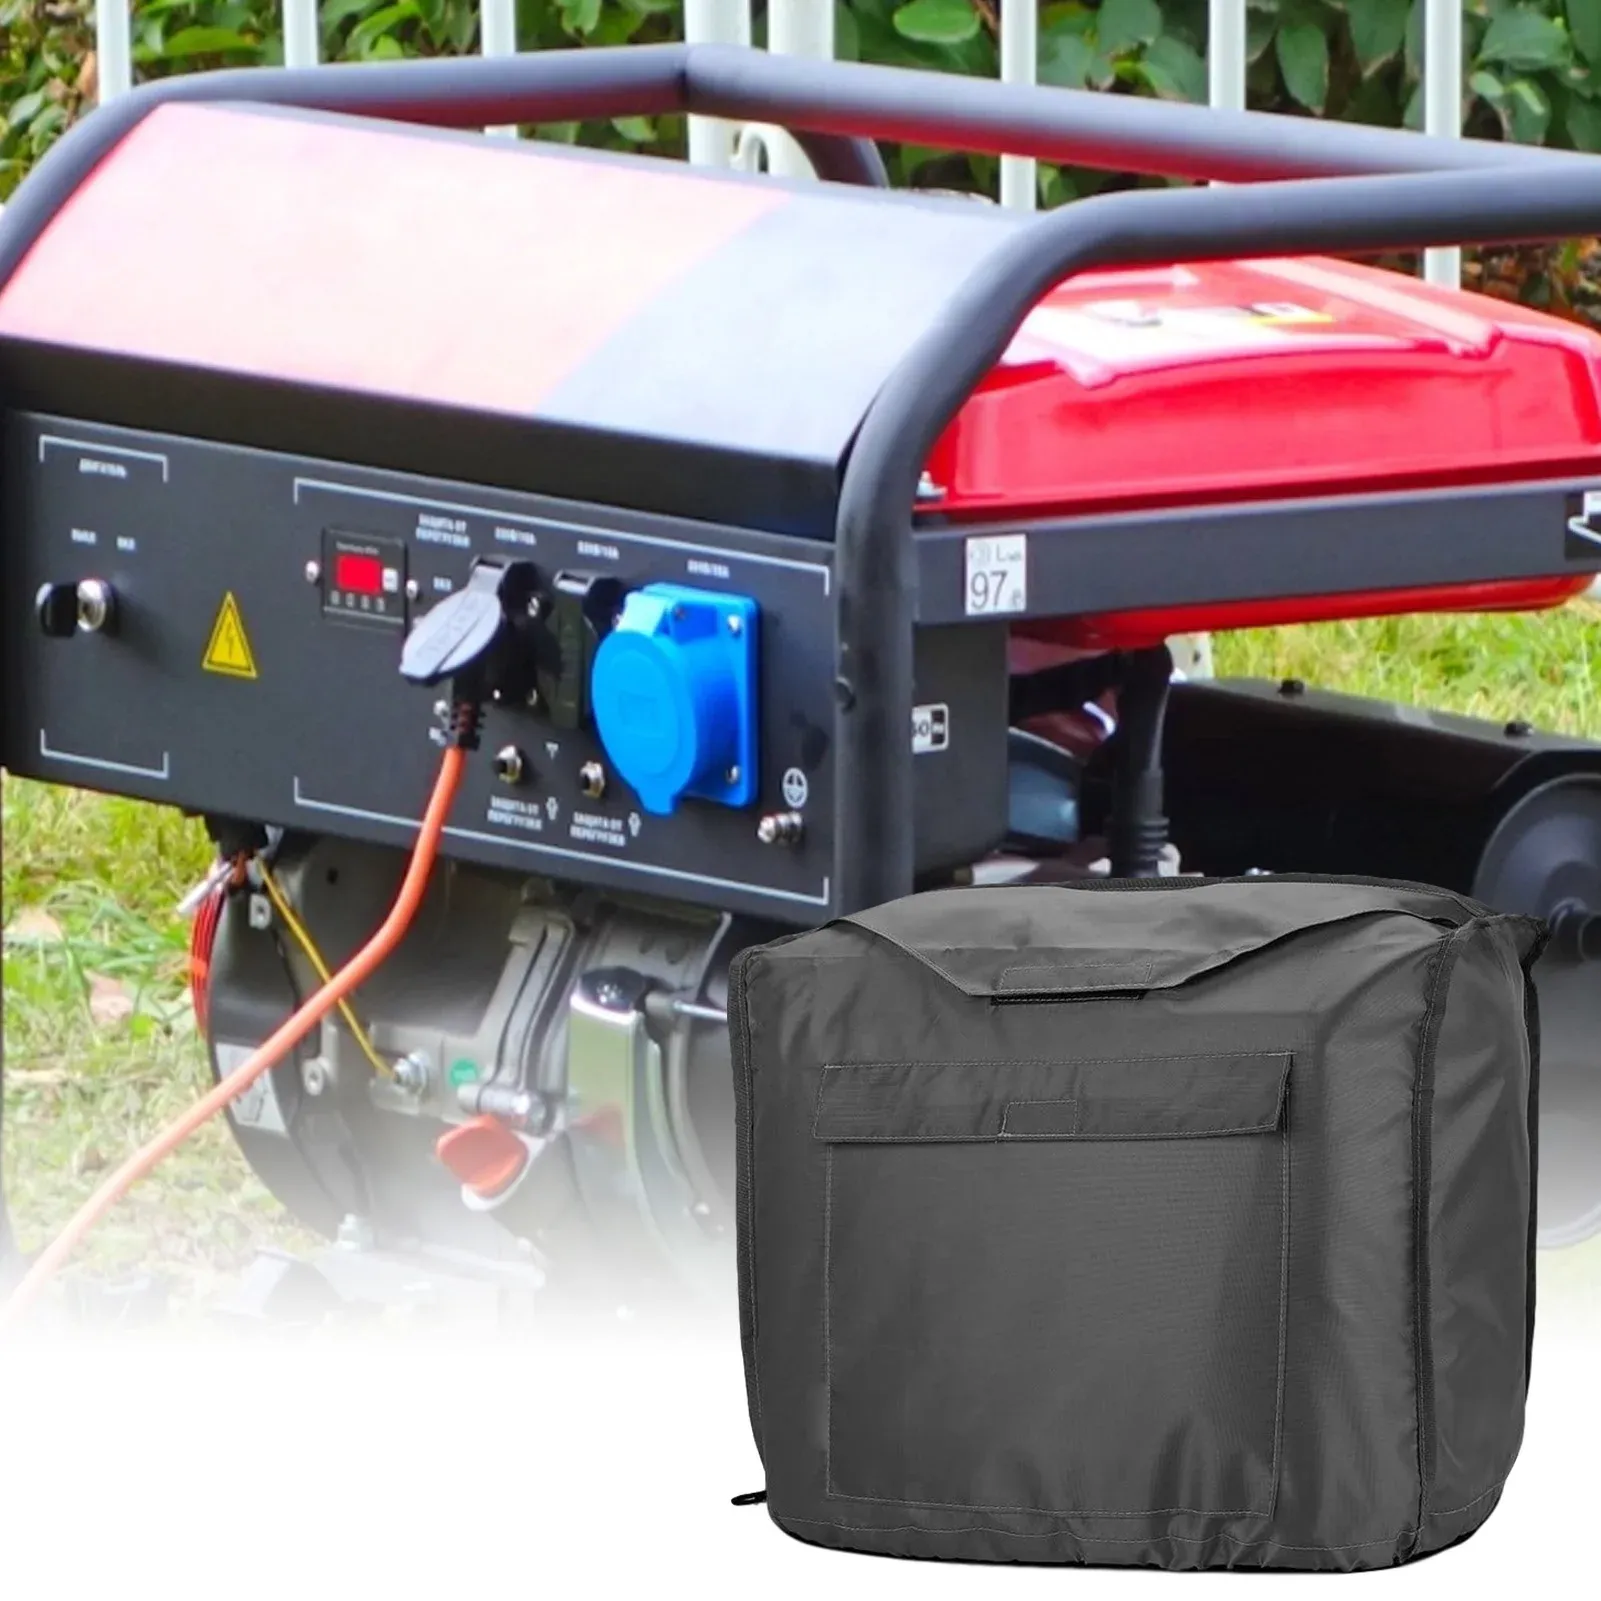 ネット屋外ジェネレーターストレージカバーパワー機器ダストカバー防水ケース耐久性のあるキャリーバッグ